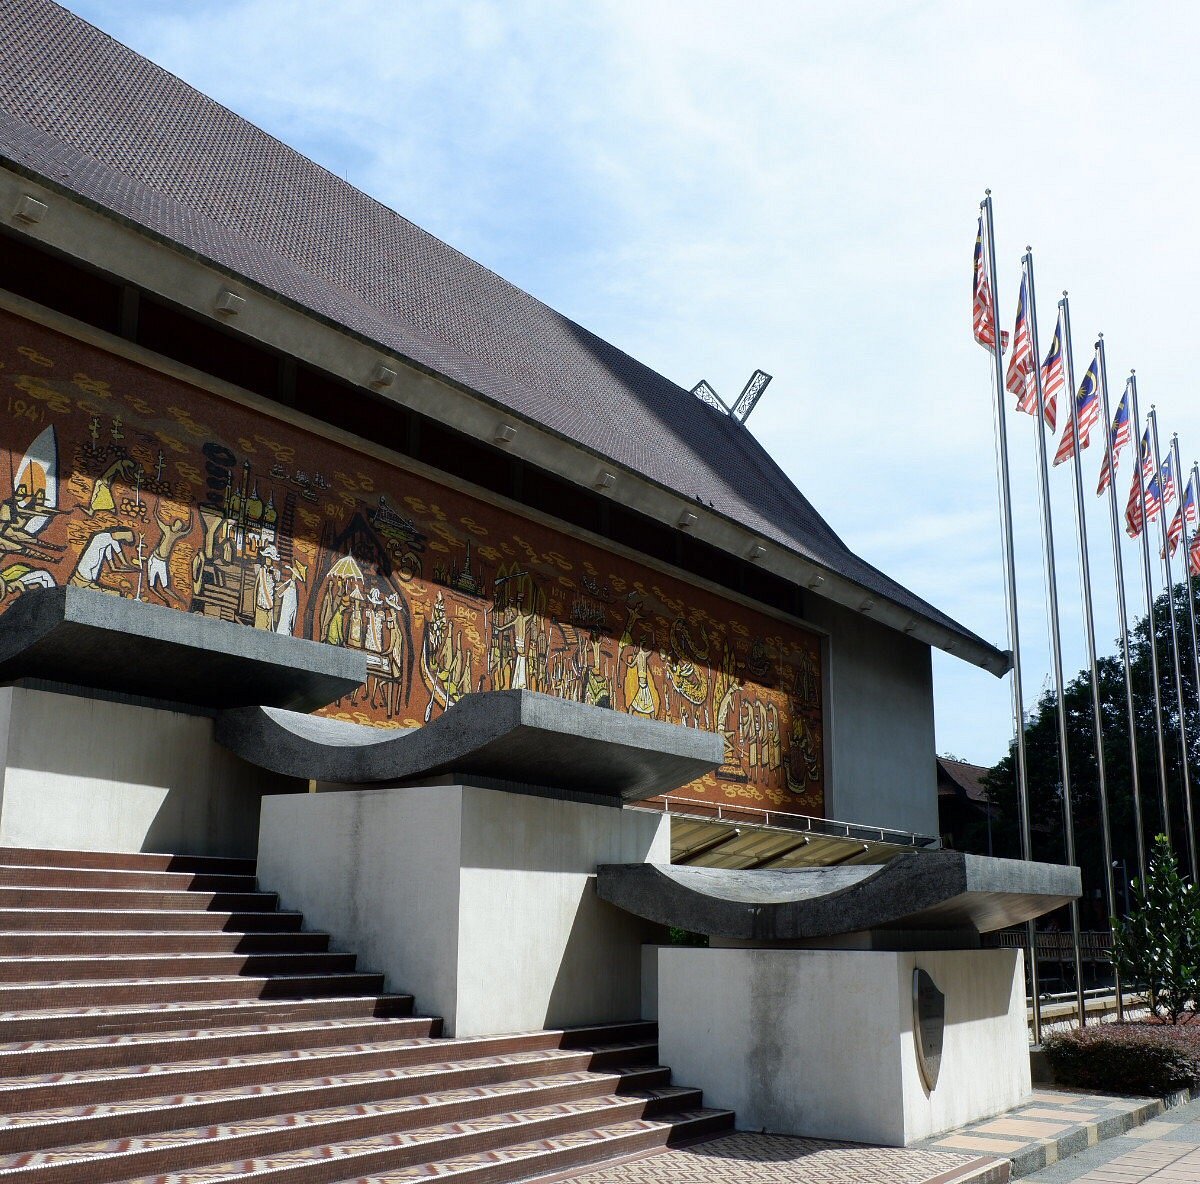 National Museum Kuala Lumpur là một trong những điểm đến văn hóa nổi tiếng tại thành phố Kuala Lumpur, Malaysia. Tại đây, bạn sẽ được khám phá những di chỉ, tác phẩm nghệ thuật độc đáo của quốc gia Malaysia. Hãy cùng tìm hiểu thêm và cảm nhận sự độc đáo tại địa điểm này.